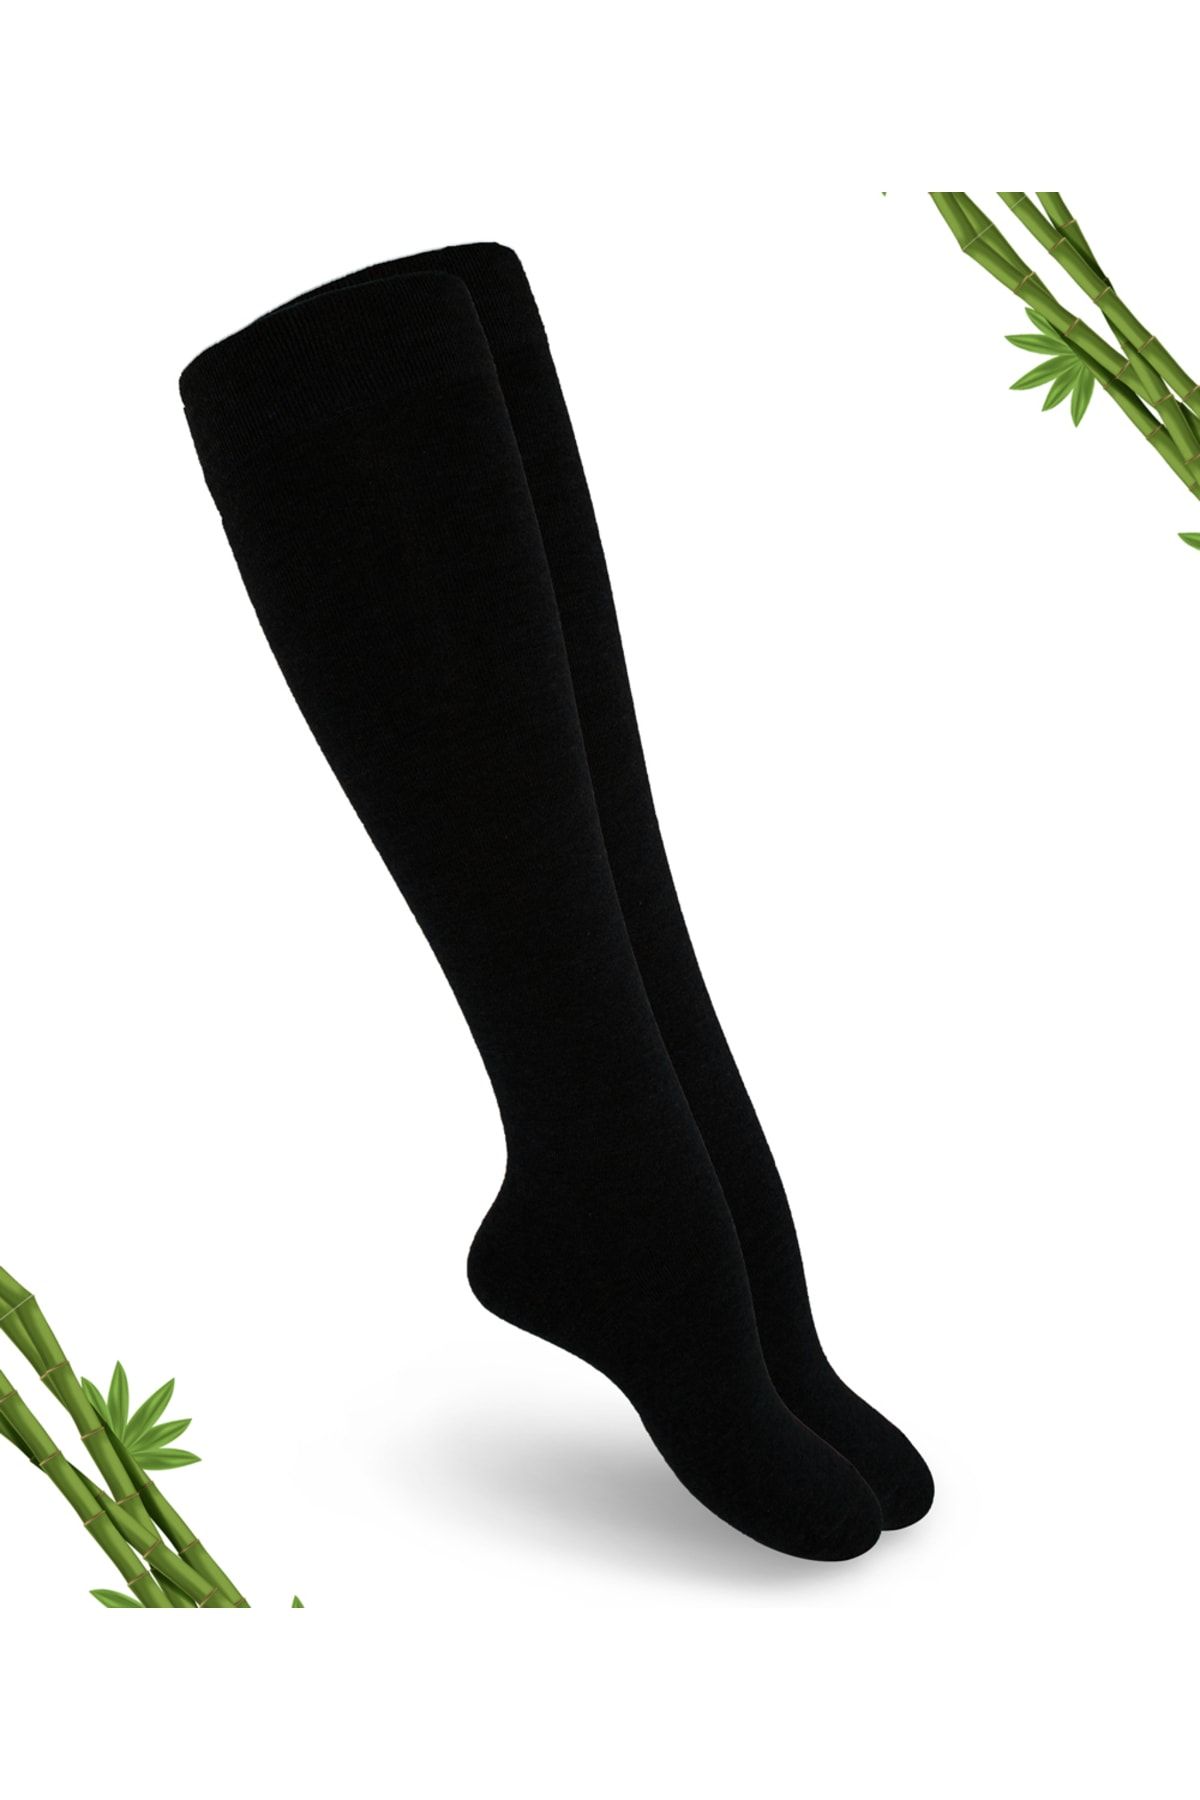 DAYCO Premium Siyah Renk Kadın Dikişsiz Dizaltı Bambu Çorap - (1 ÇİFT)